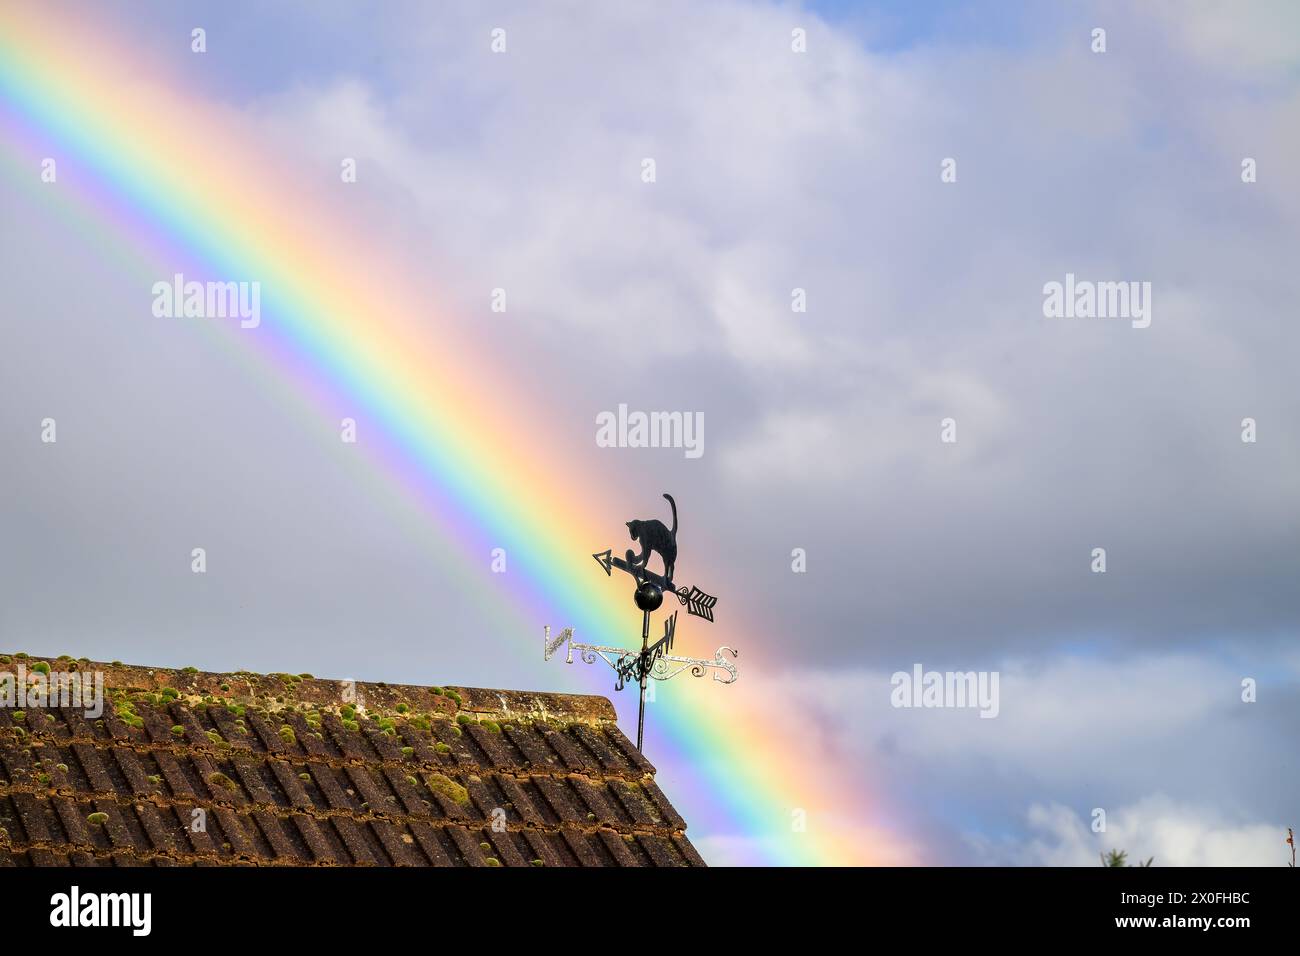 Ein Teil eines Regenbogens, der hinter einer schwarzen Katze auf einem alten Dachgebäude glitzert Stockfoto